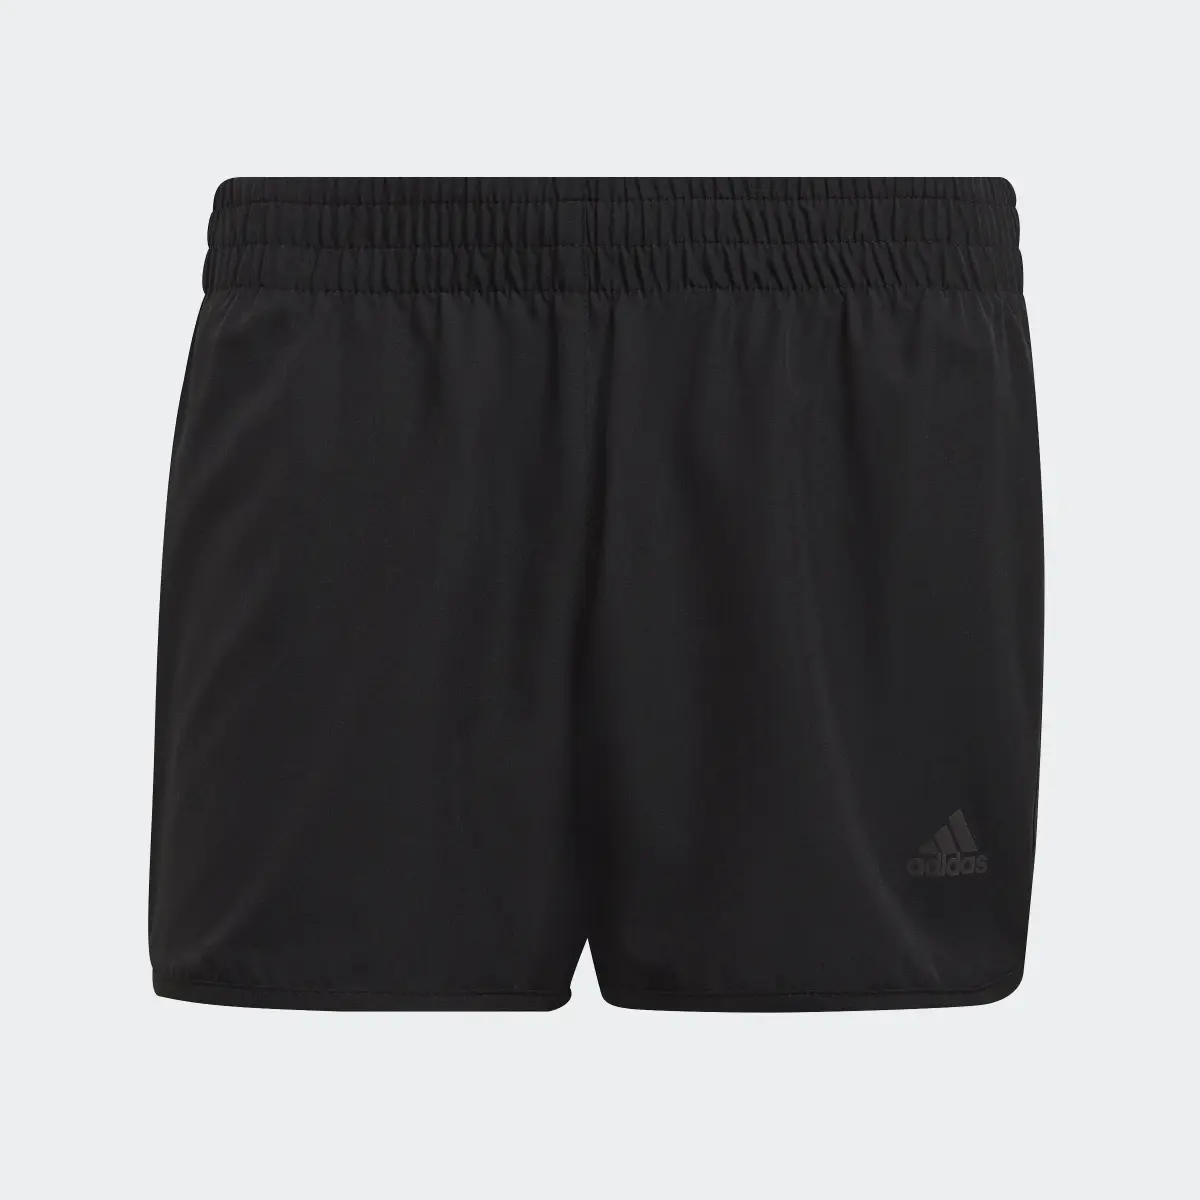 Adidas Marathon 20 Shorts. 1